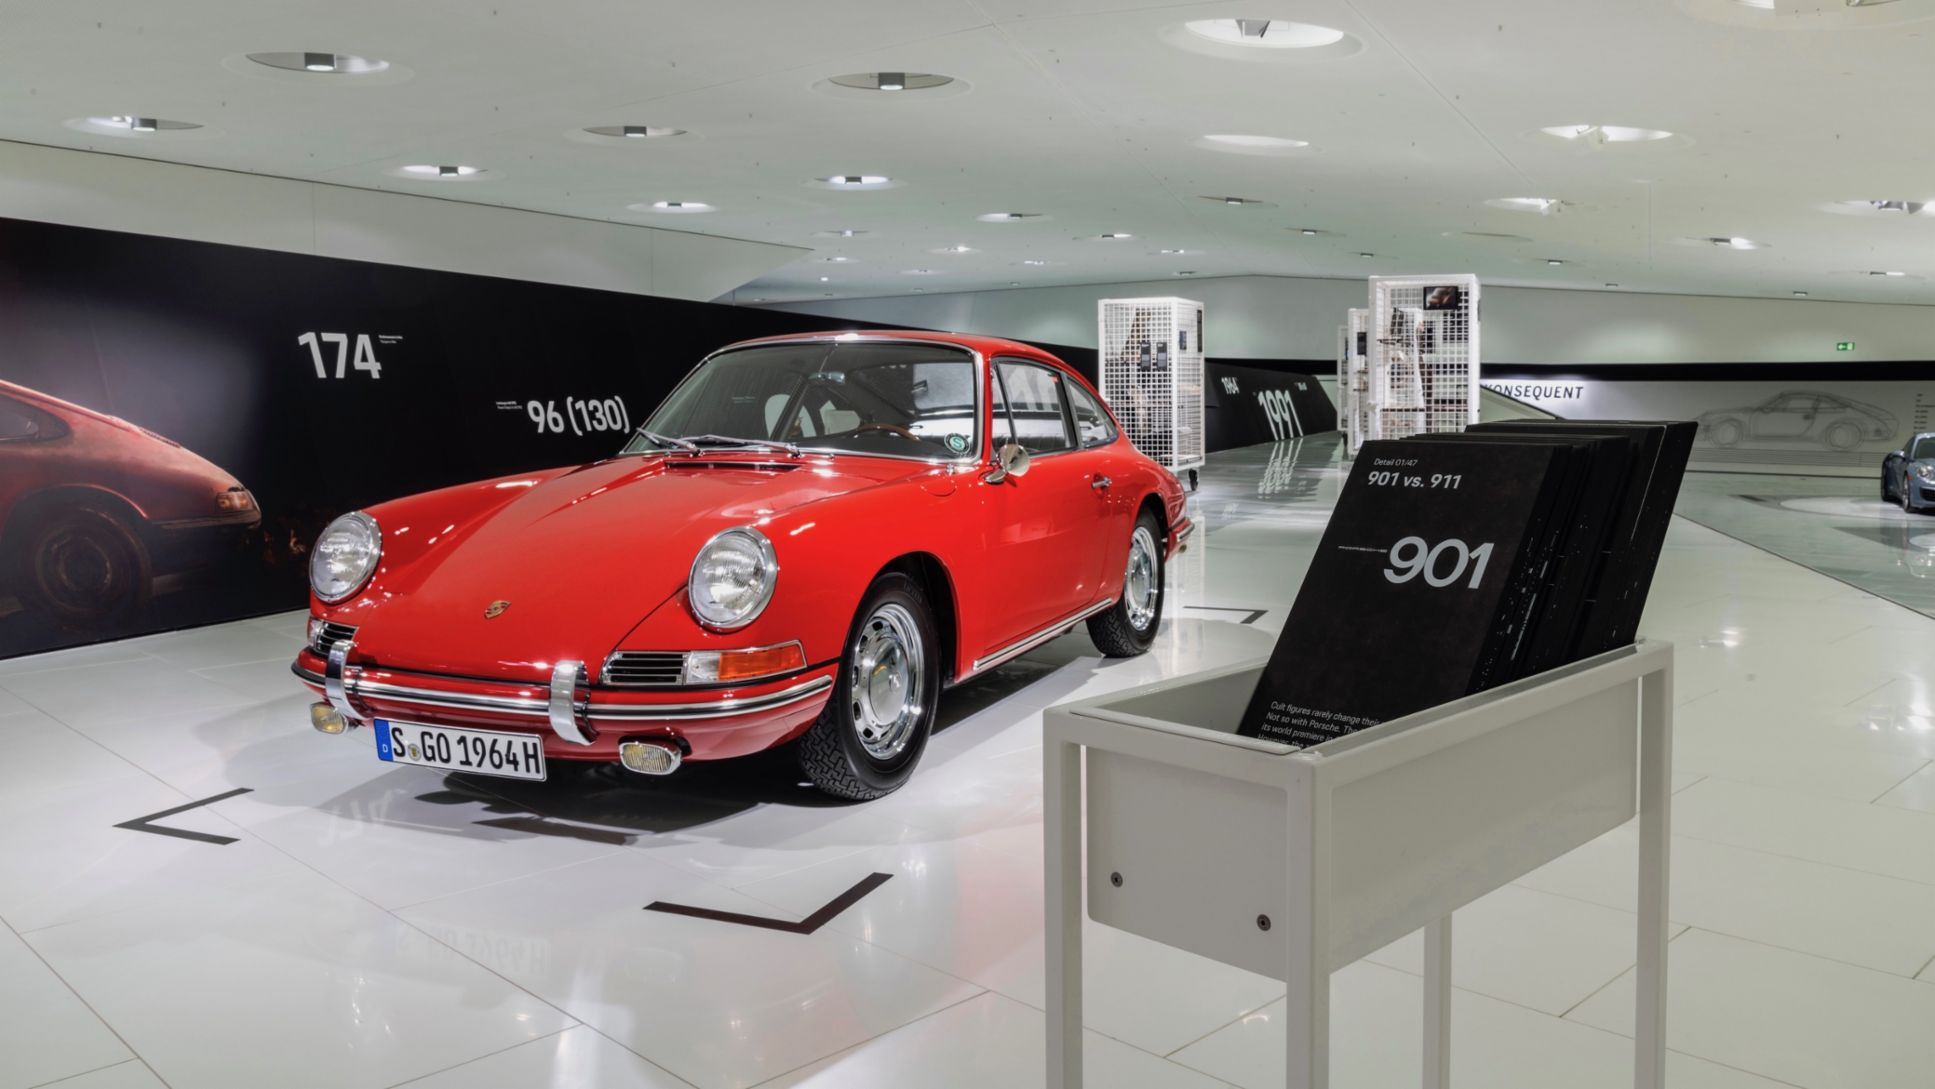 Sonderschau „911 (901 Nr. 57) – Eine Legende nimmt Fahrt auf“ , 911, Porsche Museum, 2017, Porsche AG